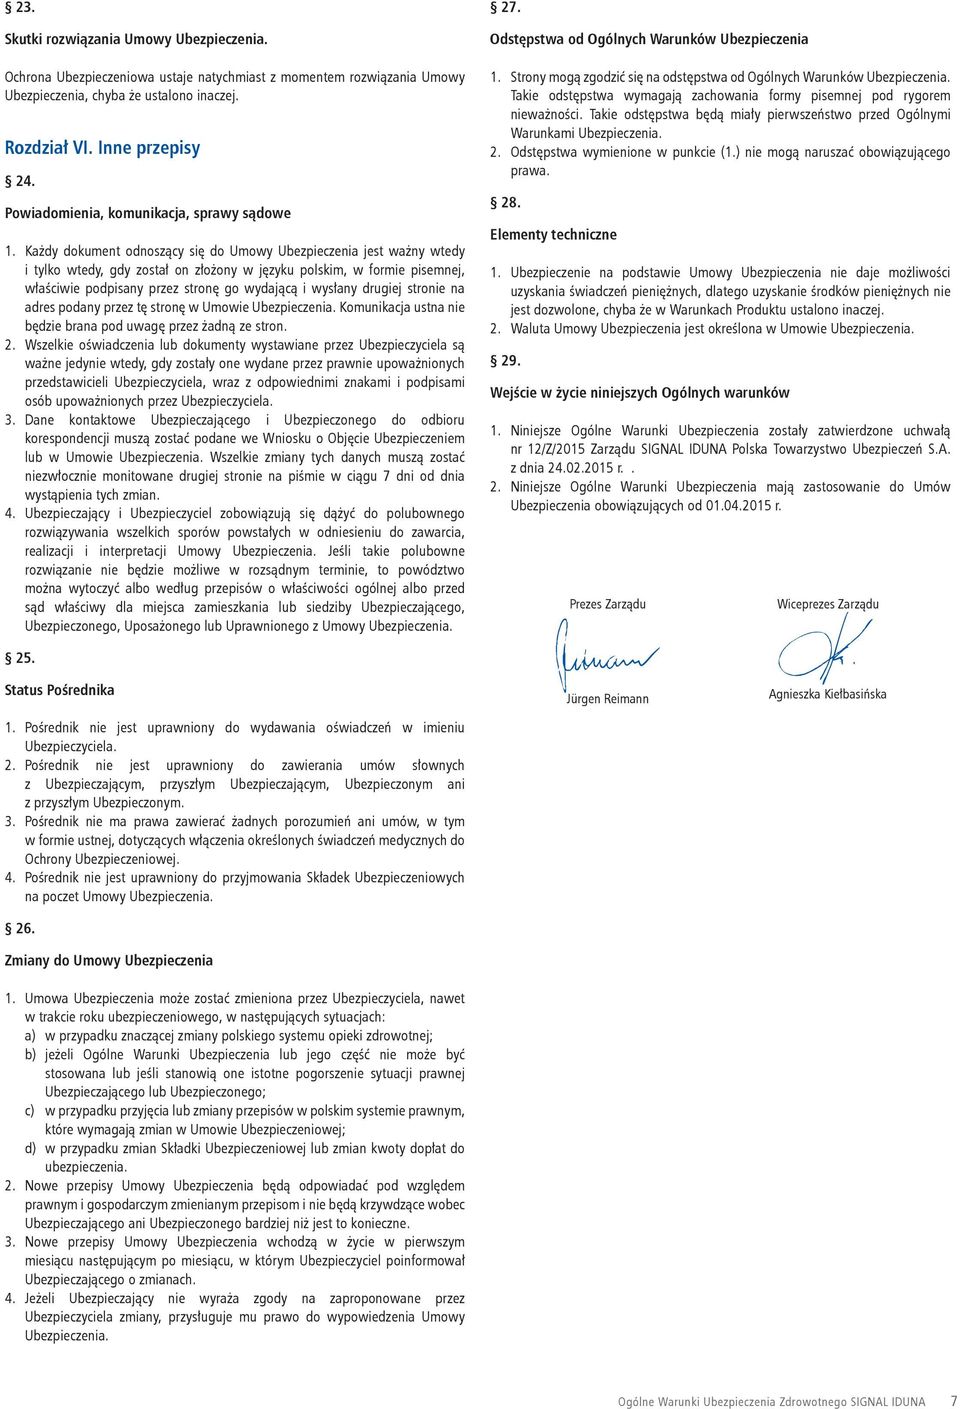 Każdy dokument odnoszący się do Umowy Ubezpieczenia jest ważny wtedy i tylko wtedy, gdy został on złożony w języku polskim, w formie pisemnej, właściwie podpisany przez stronę go wydającą i wysłany